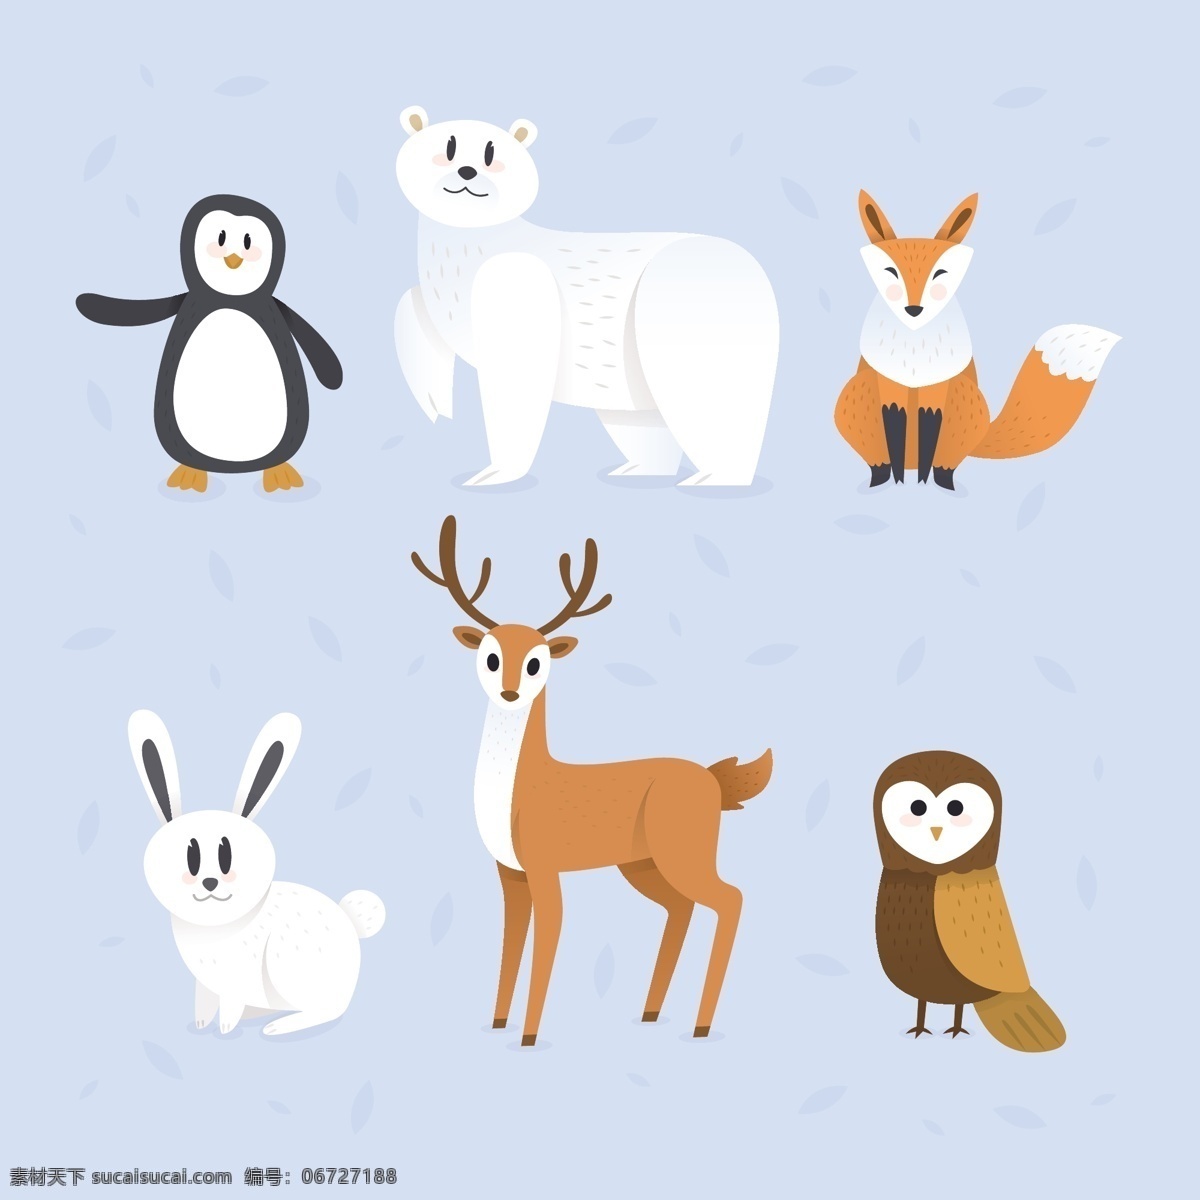 可爱 动物 矢量 企鹅 北极熊 狐狸 兔子 鹿 猫头鹰 野生动物 矢量图 生物世界